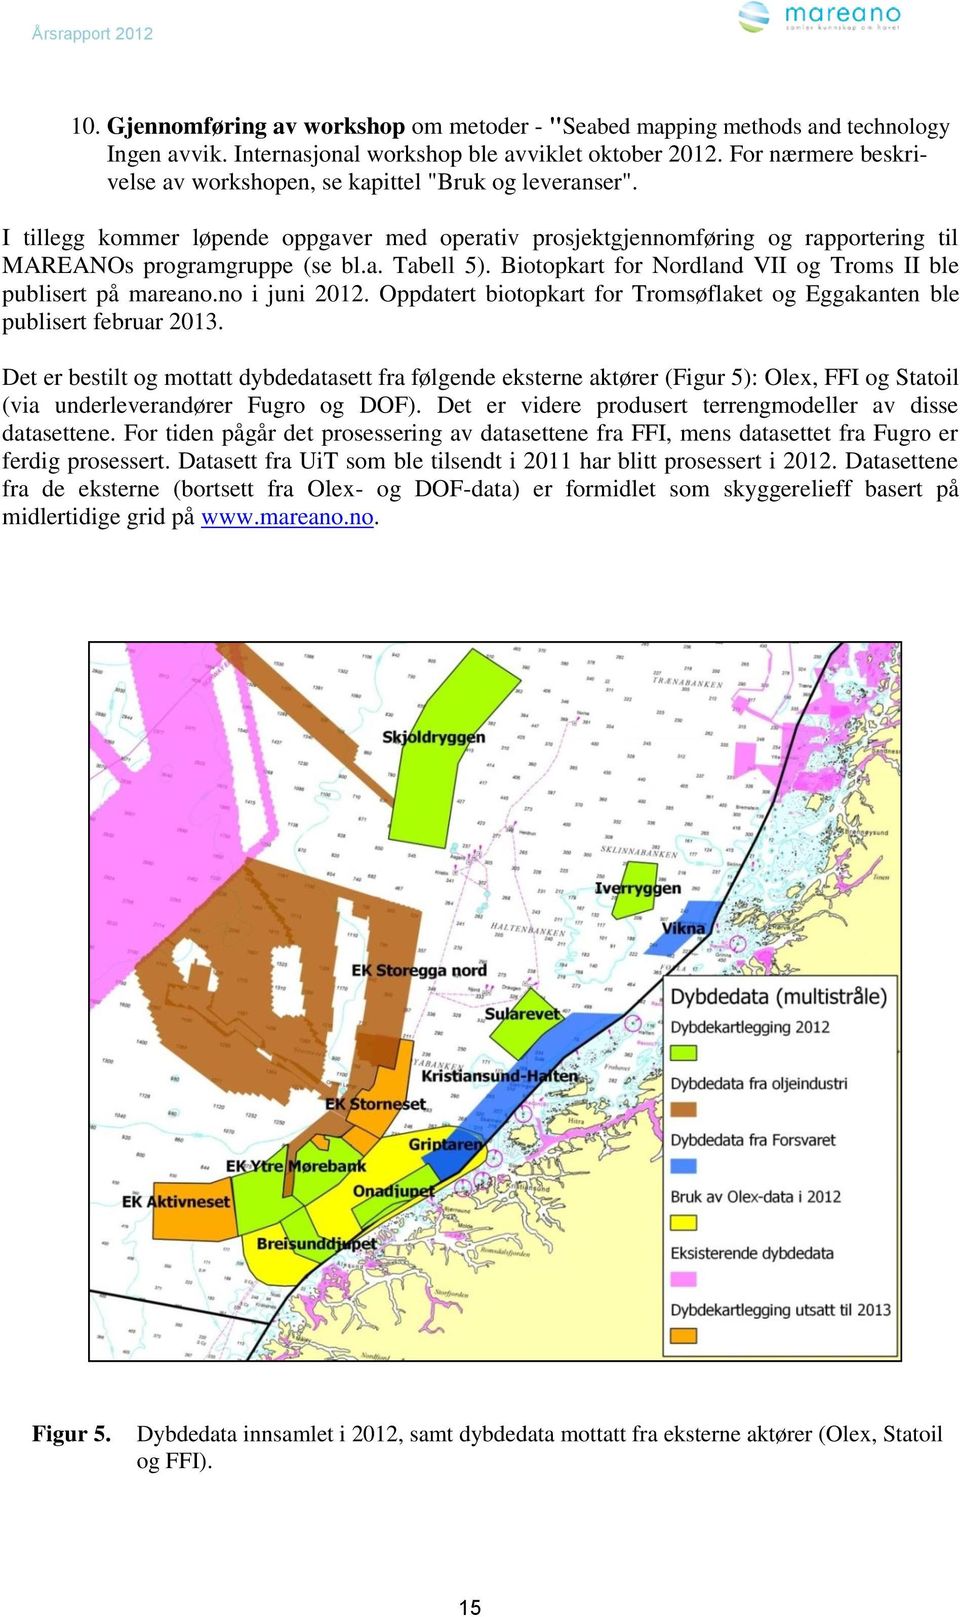 Biotopkart for Nordland VII og Troms II ble publisert på mareano.no i juni 2012. Oppdatert biotopkart for Tromsøflaket og Eggakanten ble publisert februar 2013.